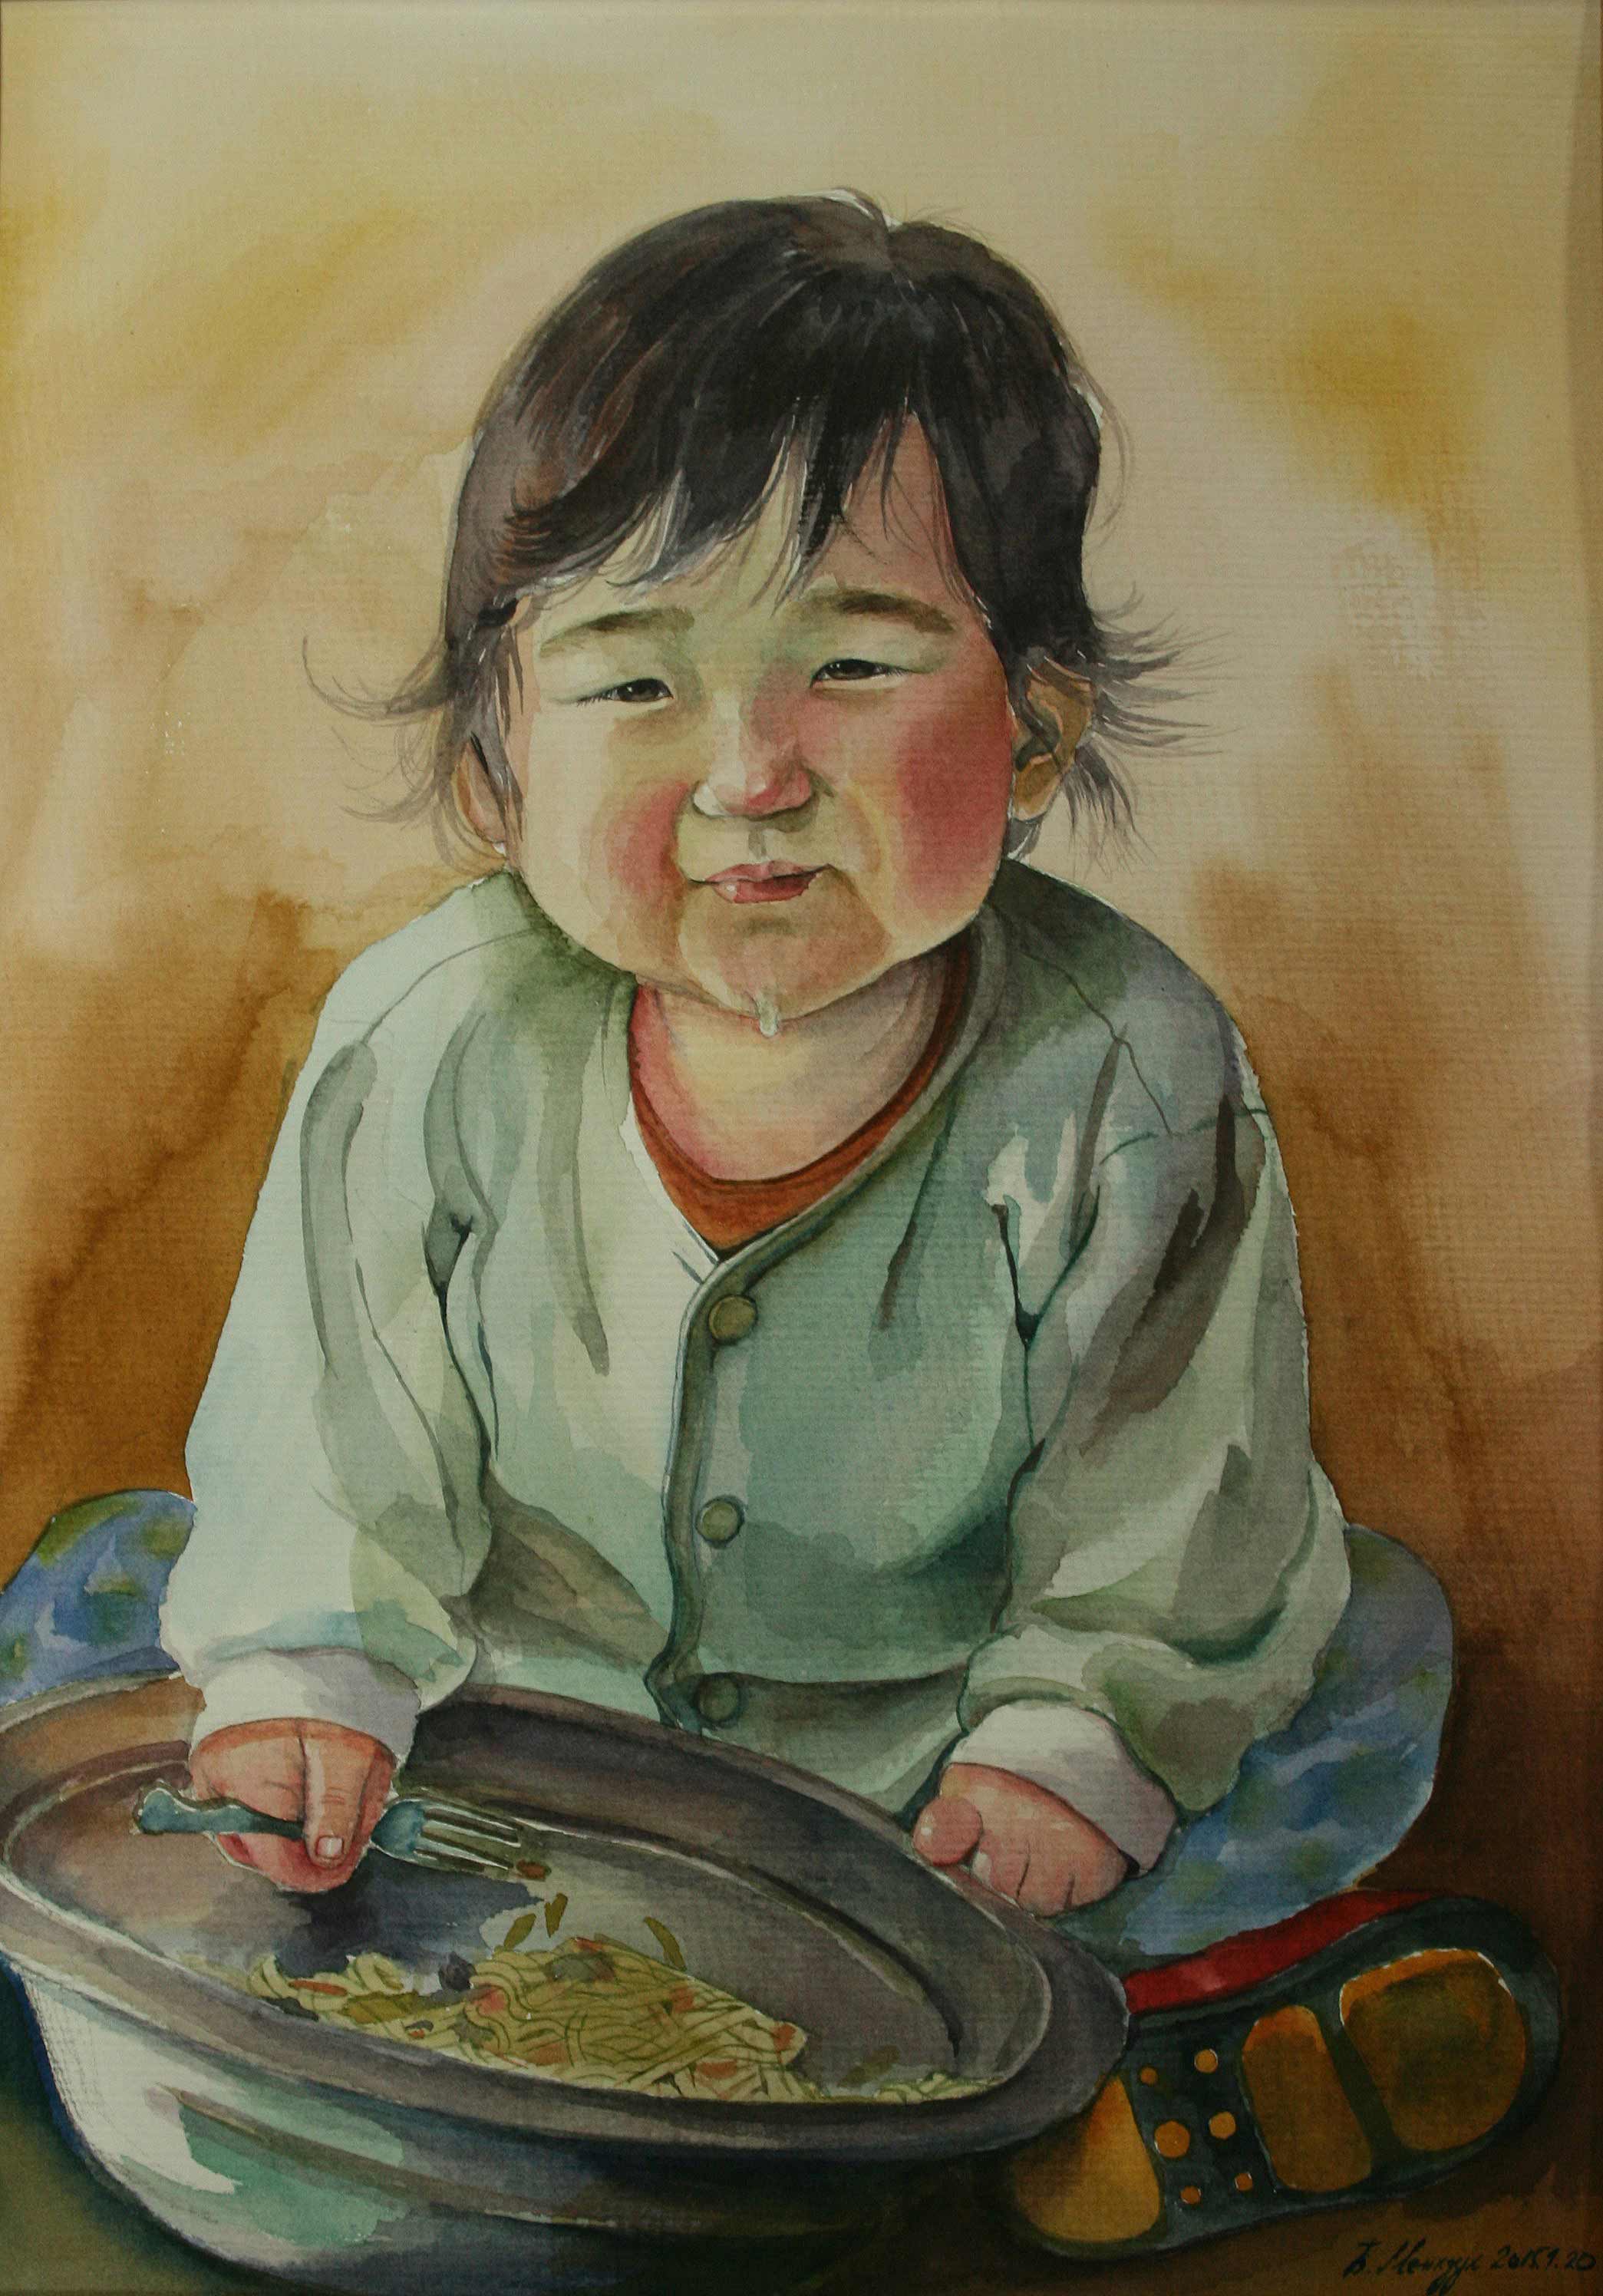 غذاء الأطفال المنغوليين